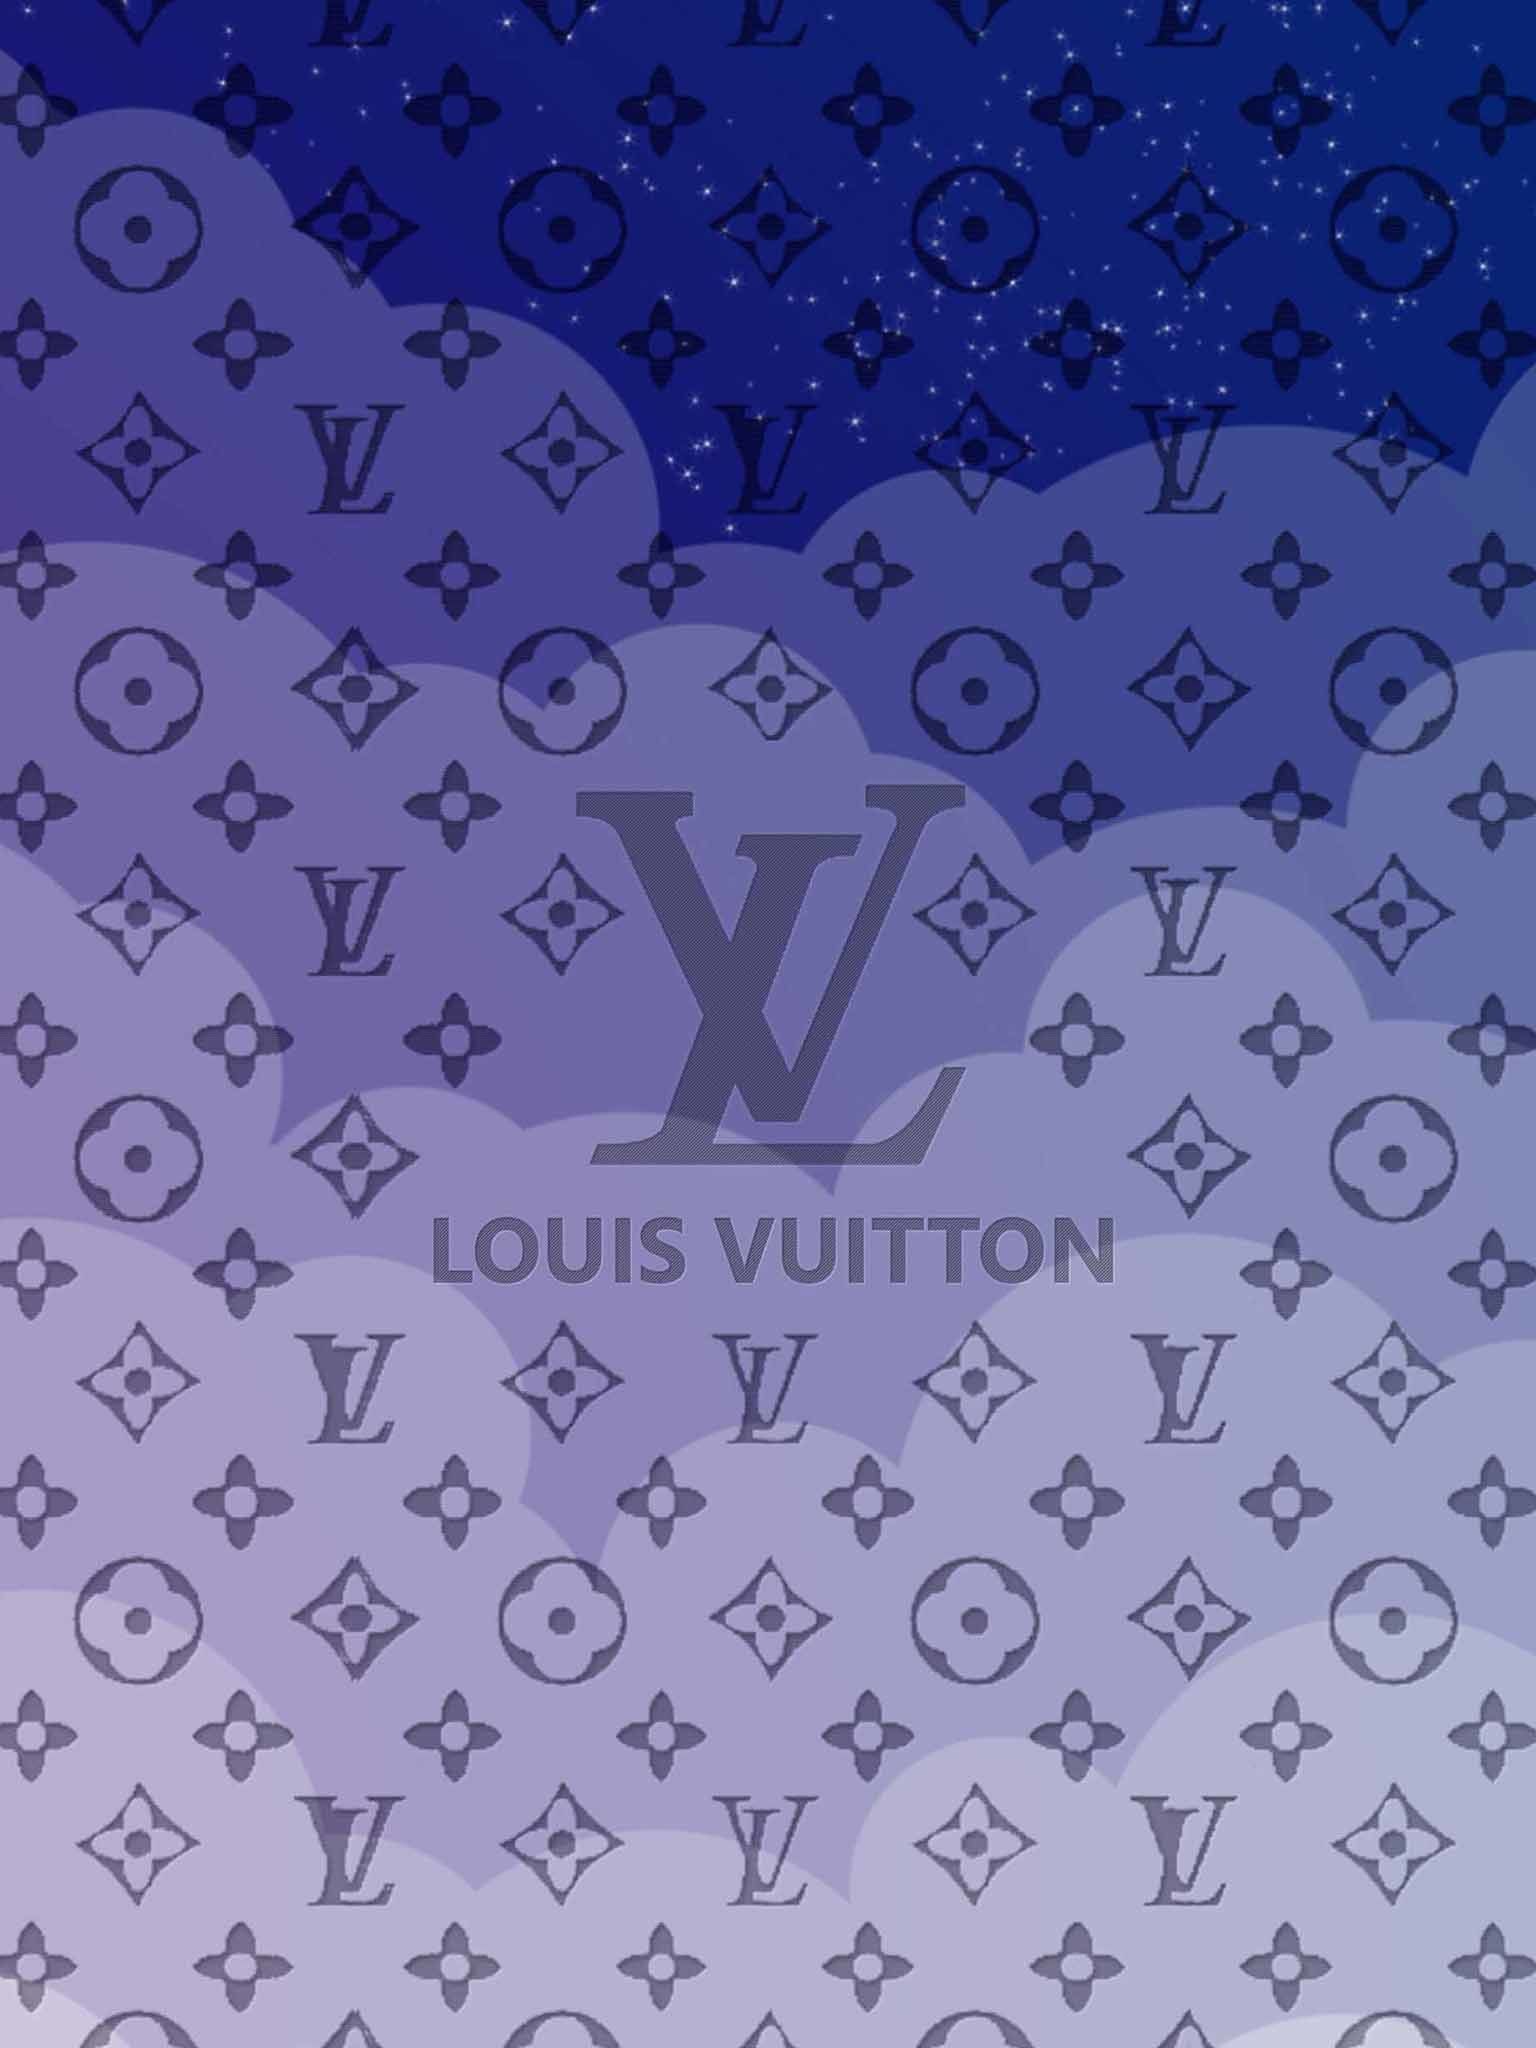 Download 4k Supreme Black Louis Vuitton Wallpaper